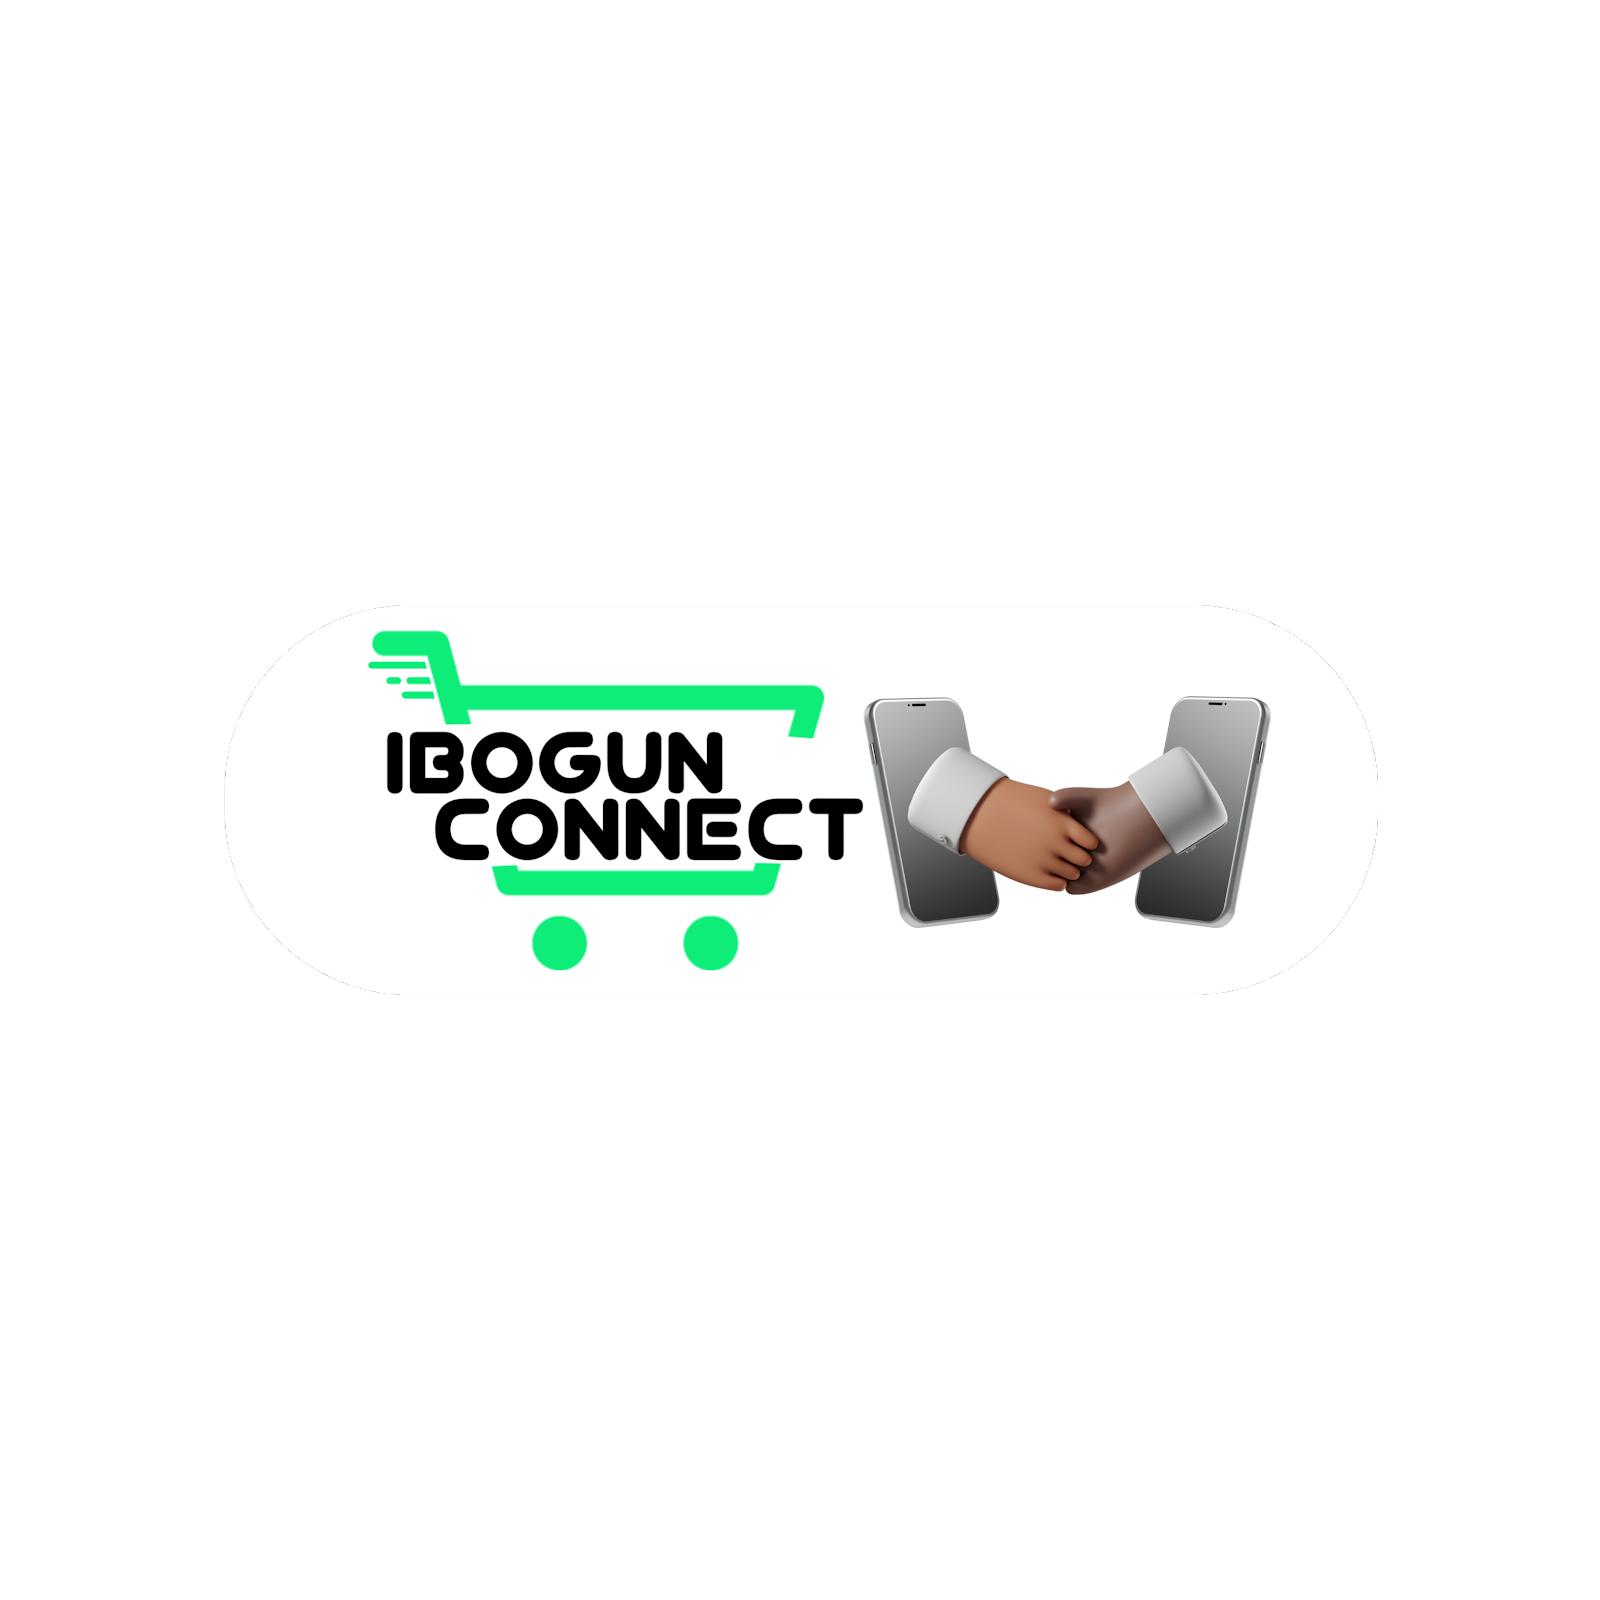 IbogunCONNECT